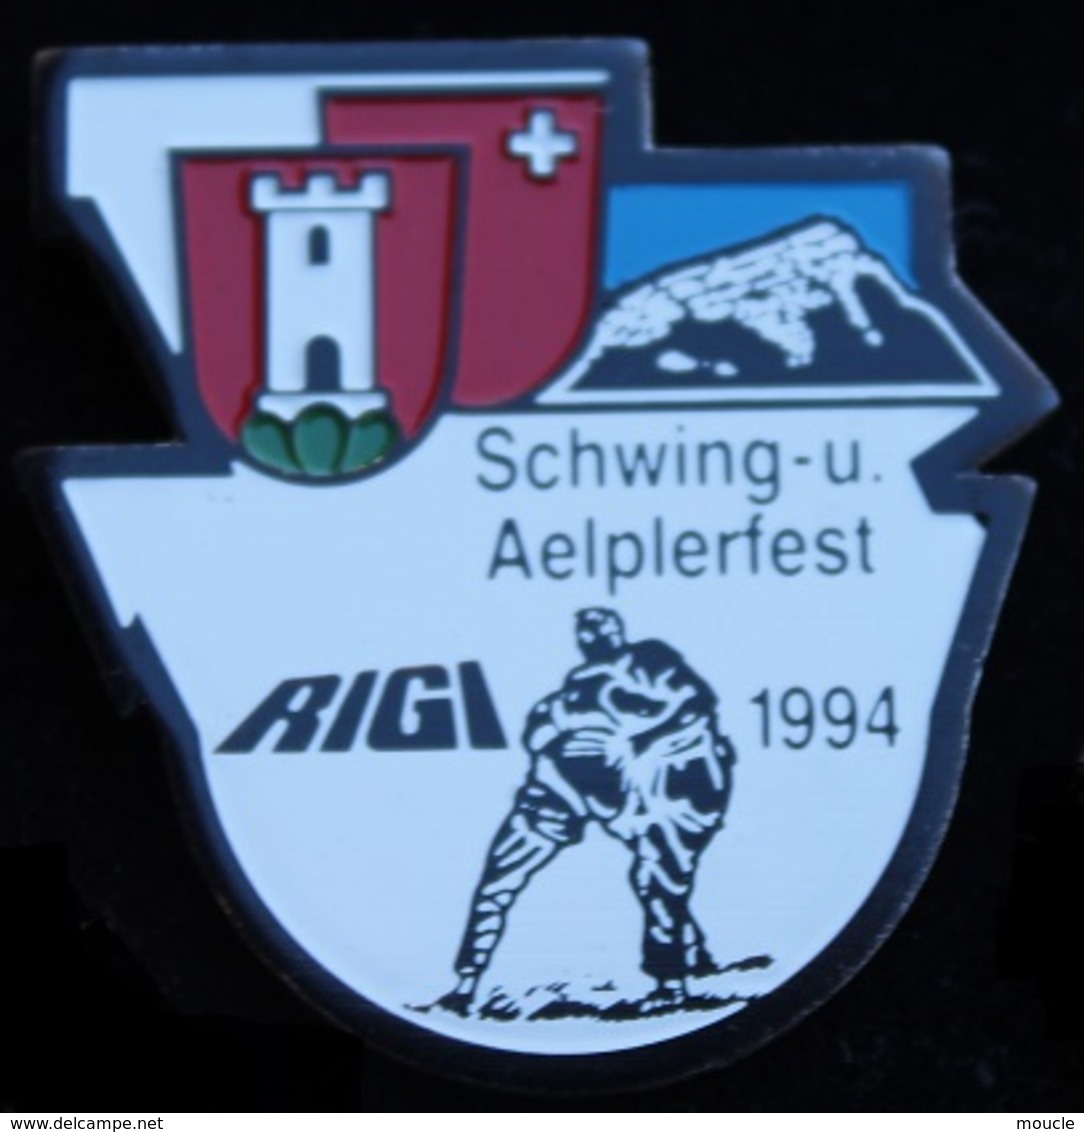 LUTTE SUISSE - LUTTEURS - SCHWING-U. - AELPERFEST - RIGI - 1994 - URI - SCHWEIZ - SWISS - SWITZERLAND -    (21) - Lutte